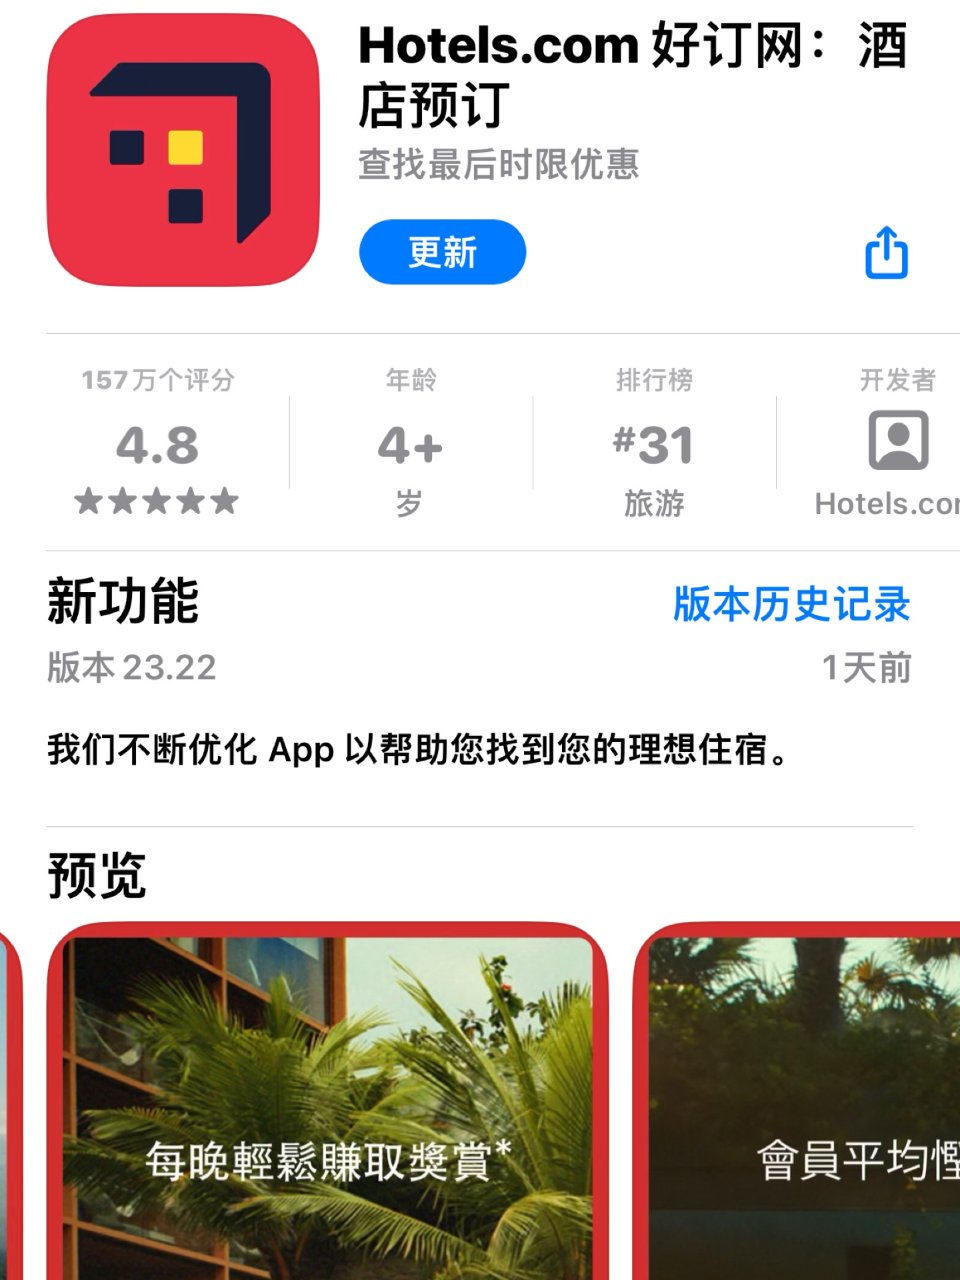 出门旅游App 推荐🏨酒店预定Hotel...